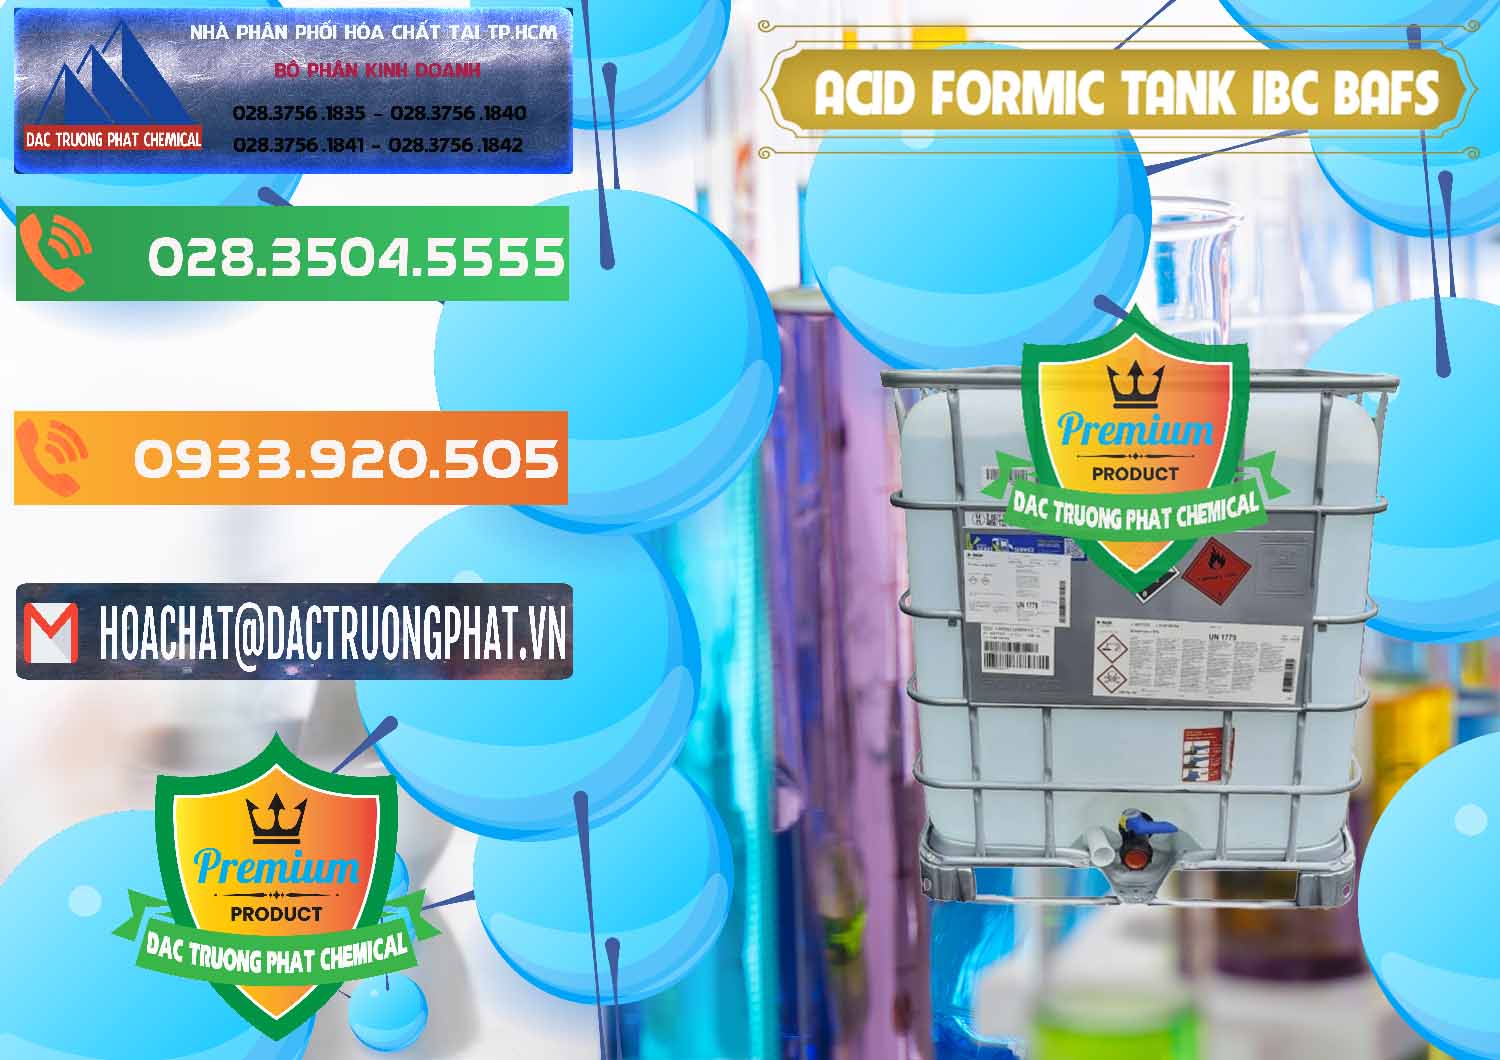 Nơi kinh doanh và bán Acid Formic - Axit Formic Tank - Bồn IBC BASF Đức - 0366 - Cung cấp & bán hóa chất tại TP.HCM - hoachatxulynuoc.com.vn